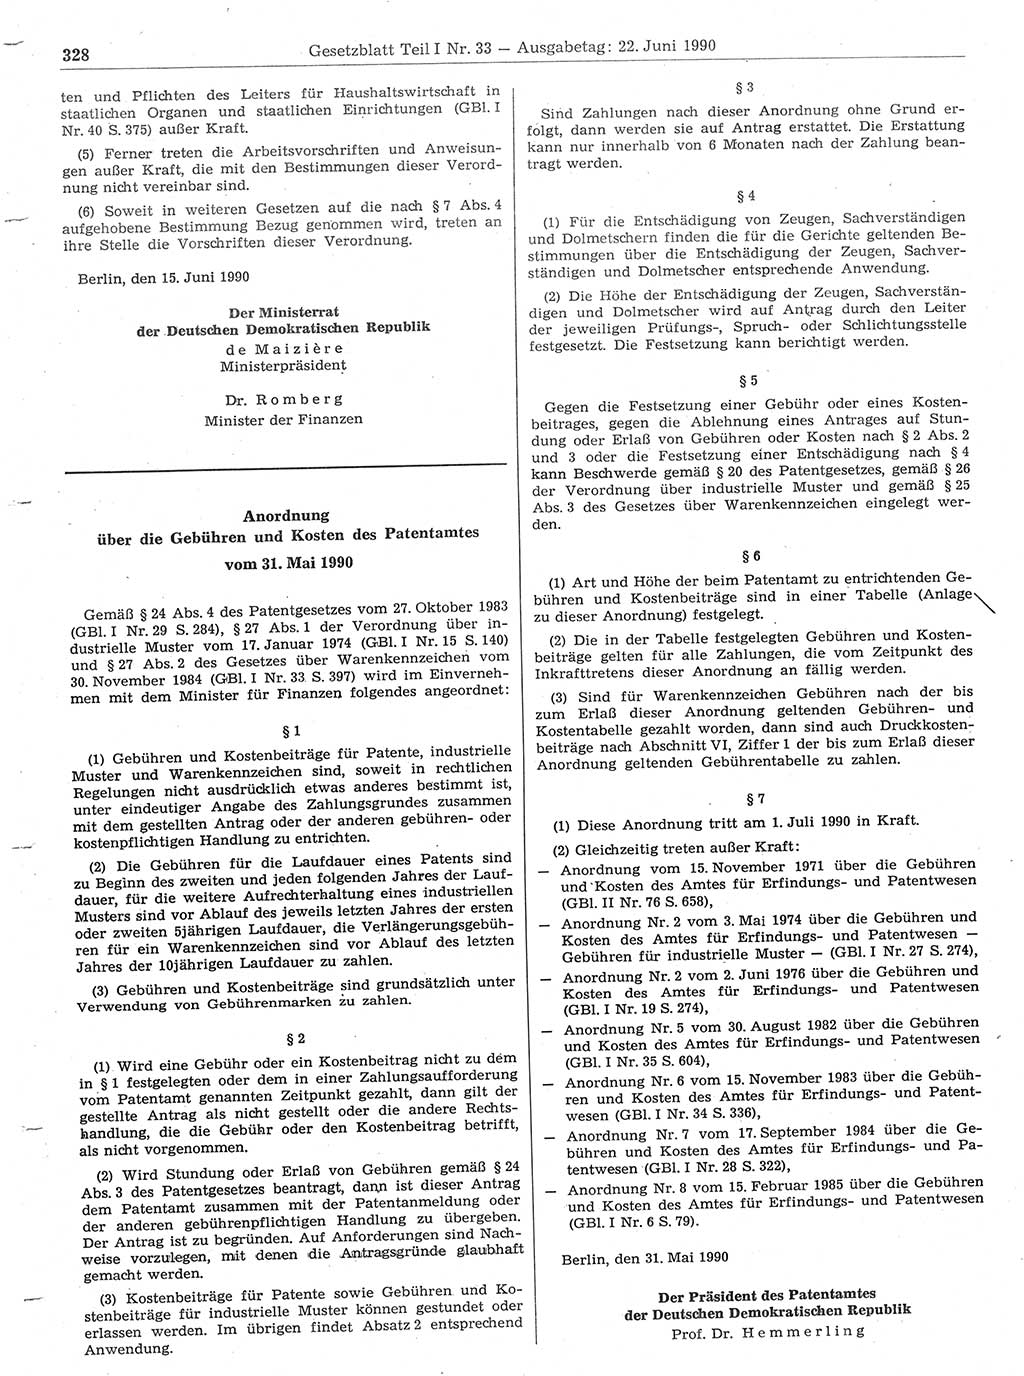 Gesetzblatt (GBl.) der Deutschen Demokratischen Republik (DDR) Teil Ⅰ 1990, Seite 328 (GBl. DDR Ⅰ 1990, S. 328)